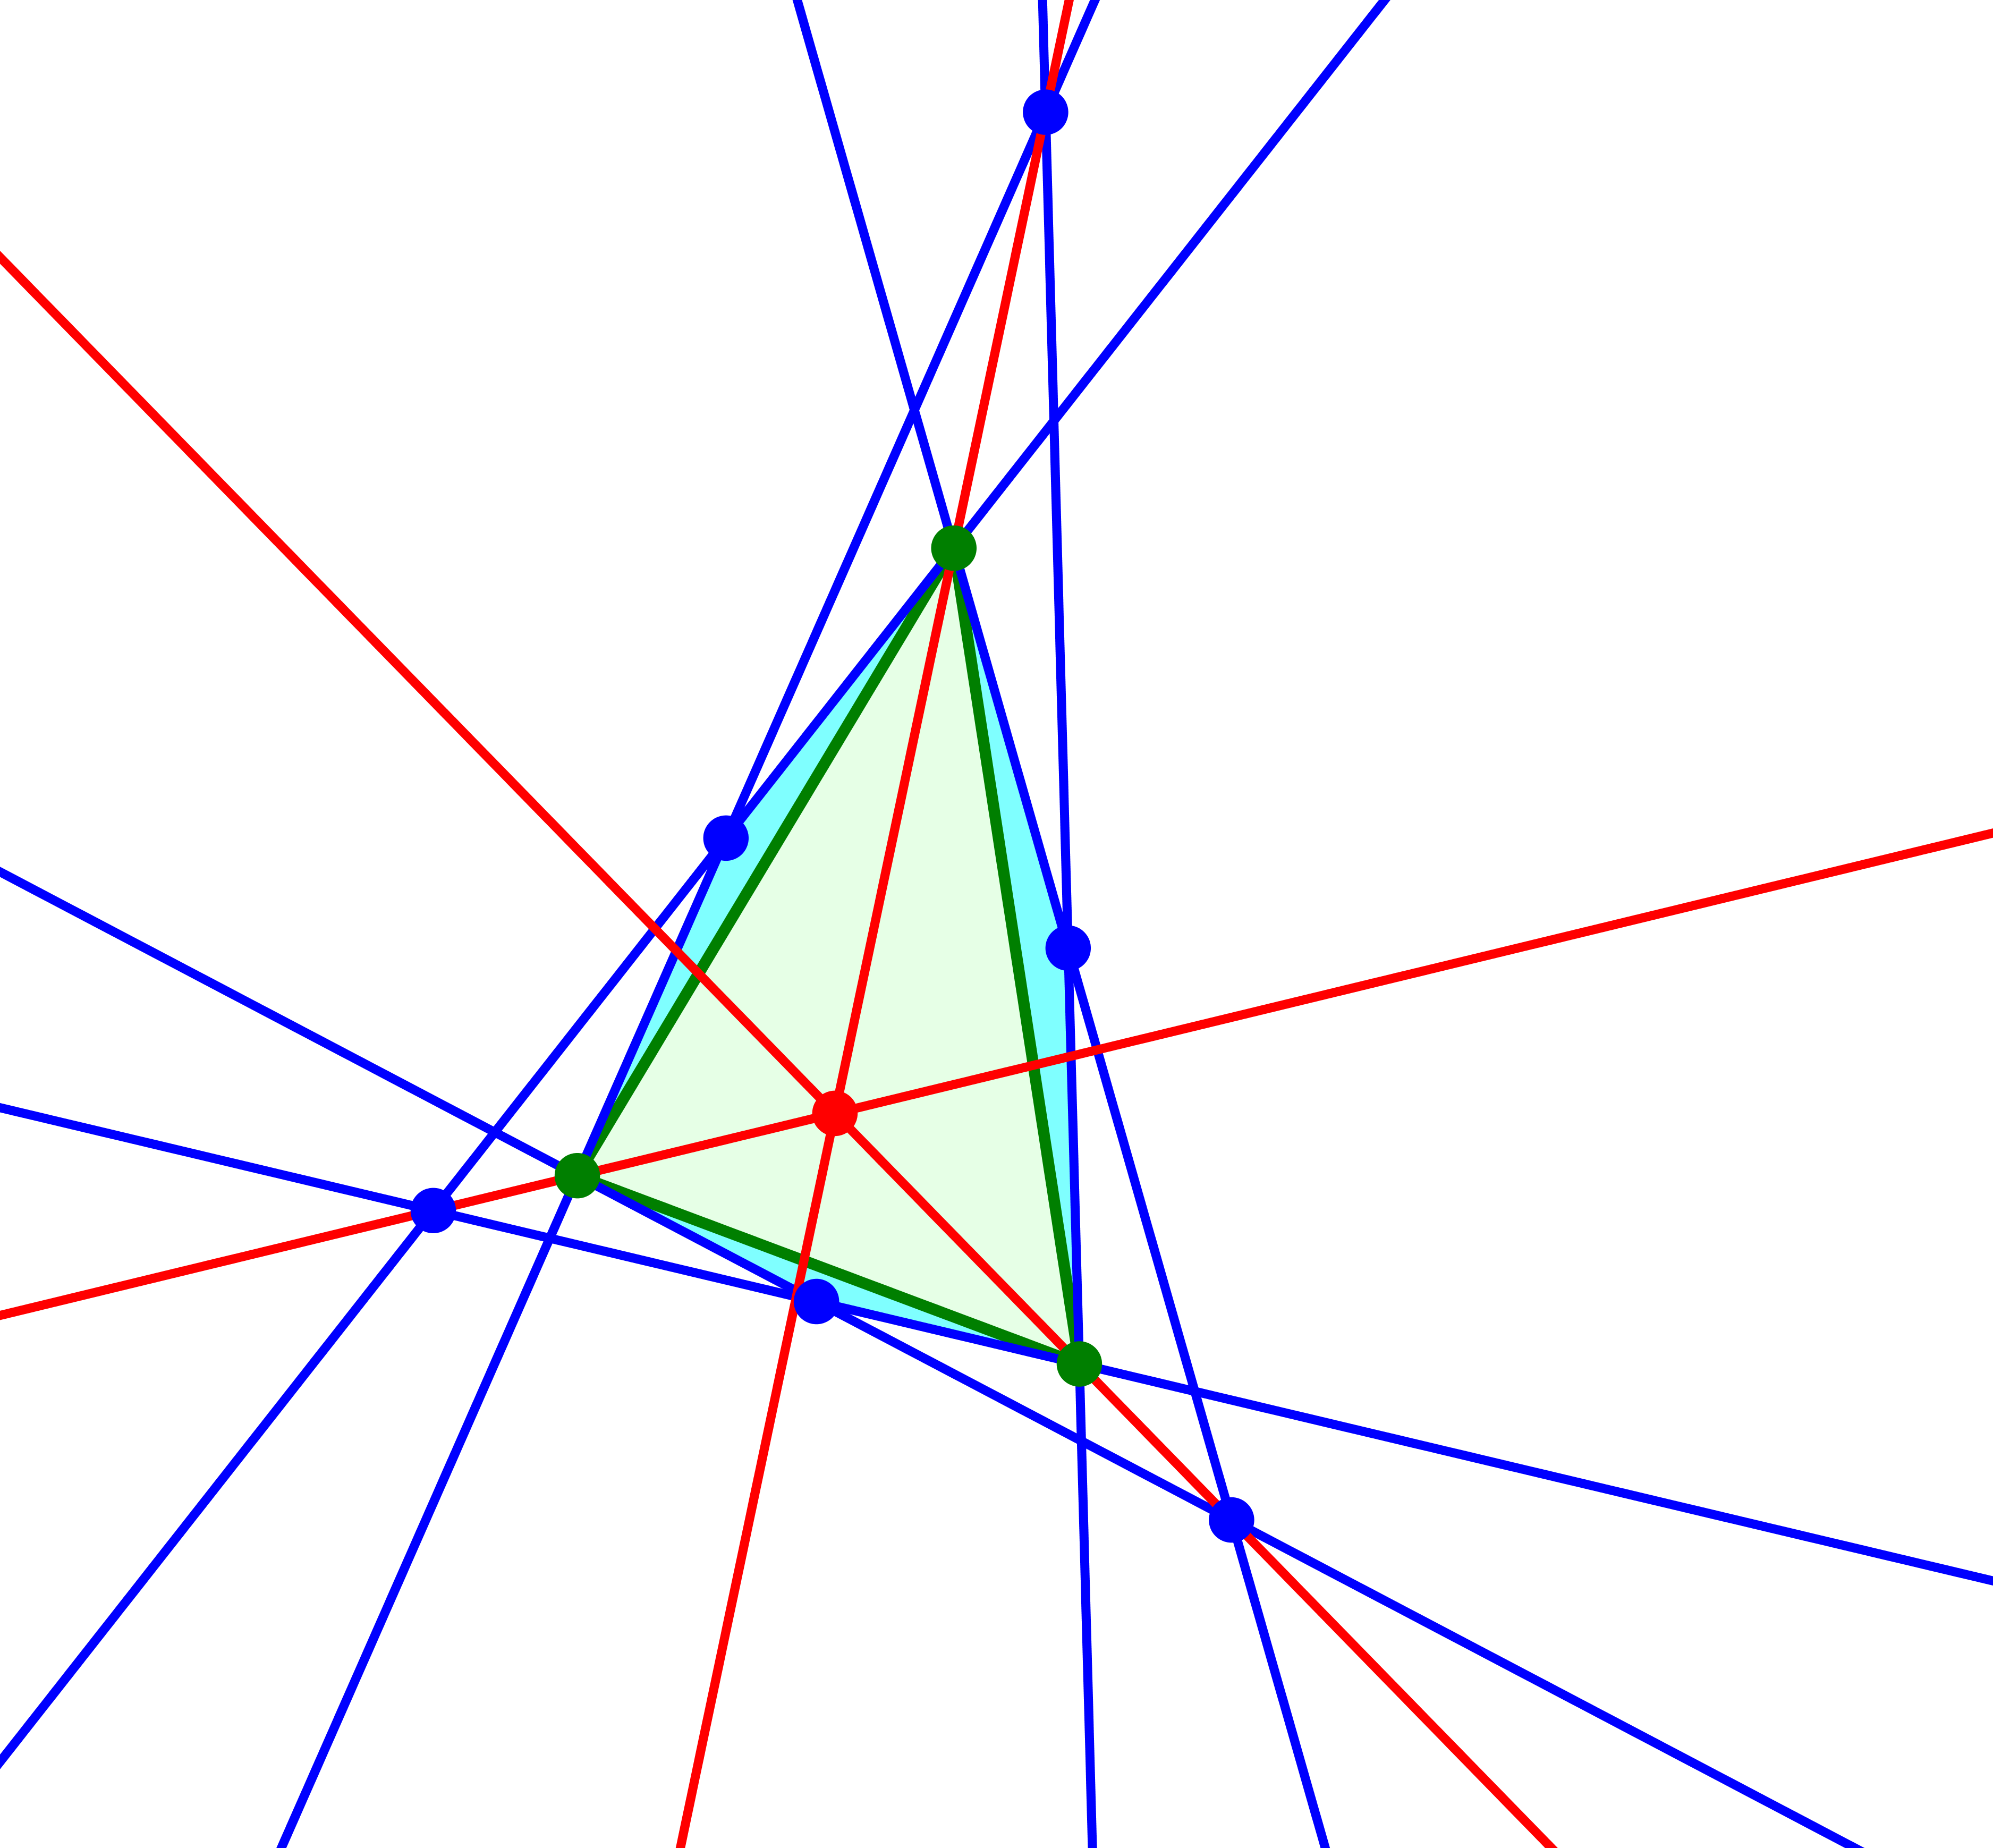 Ein Bild, das Beitrag, Laser, farbig enthält.

Automatisch generierte Beschreibung